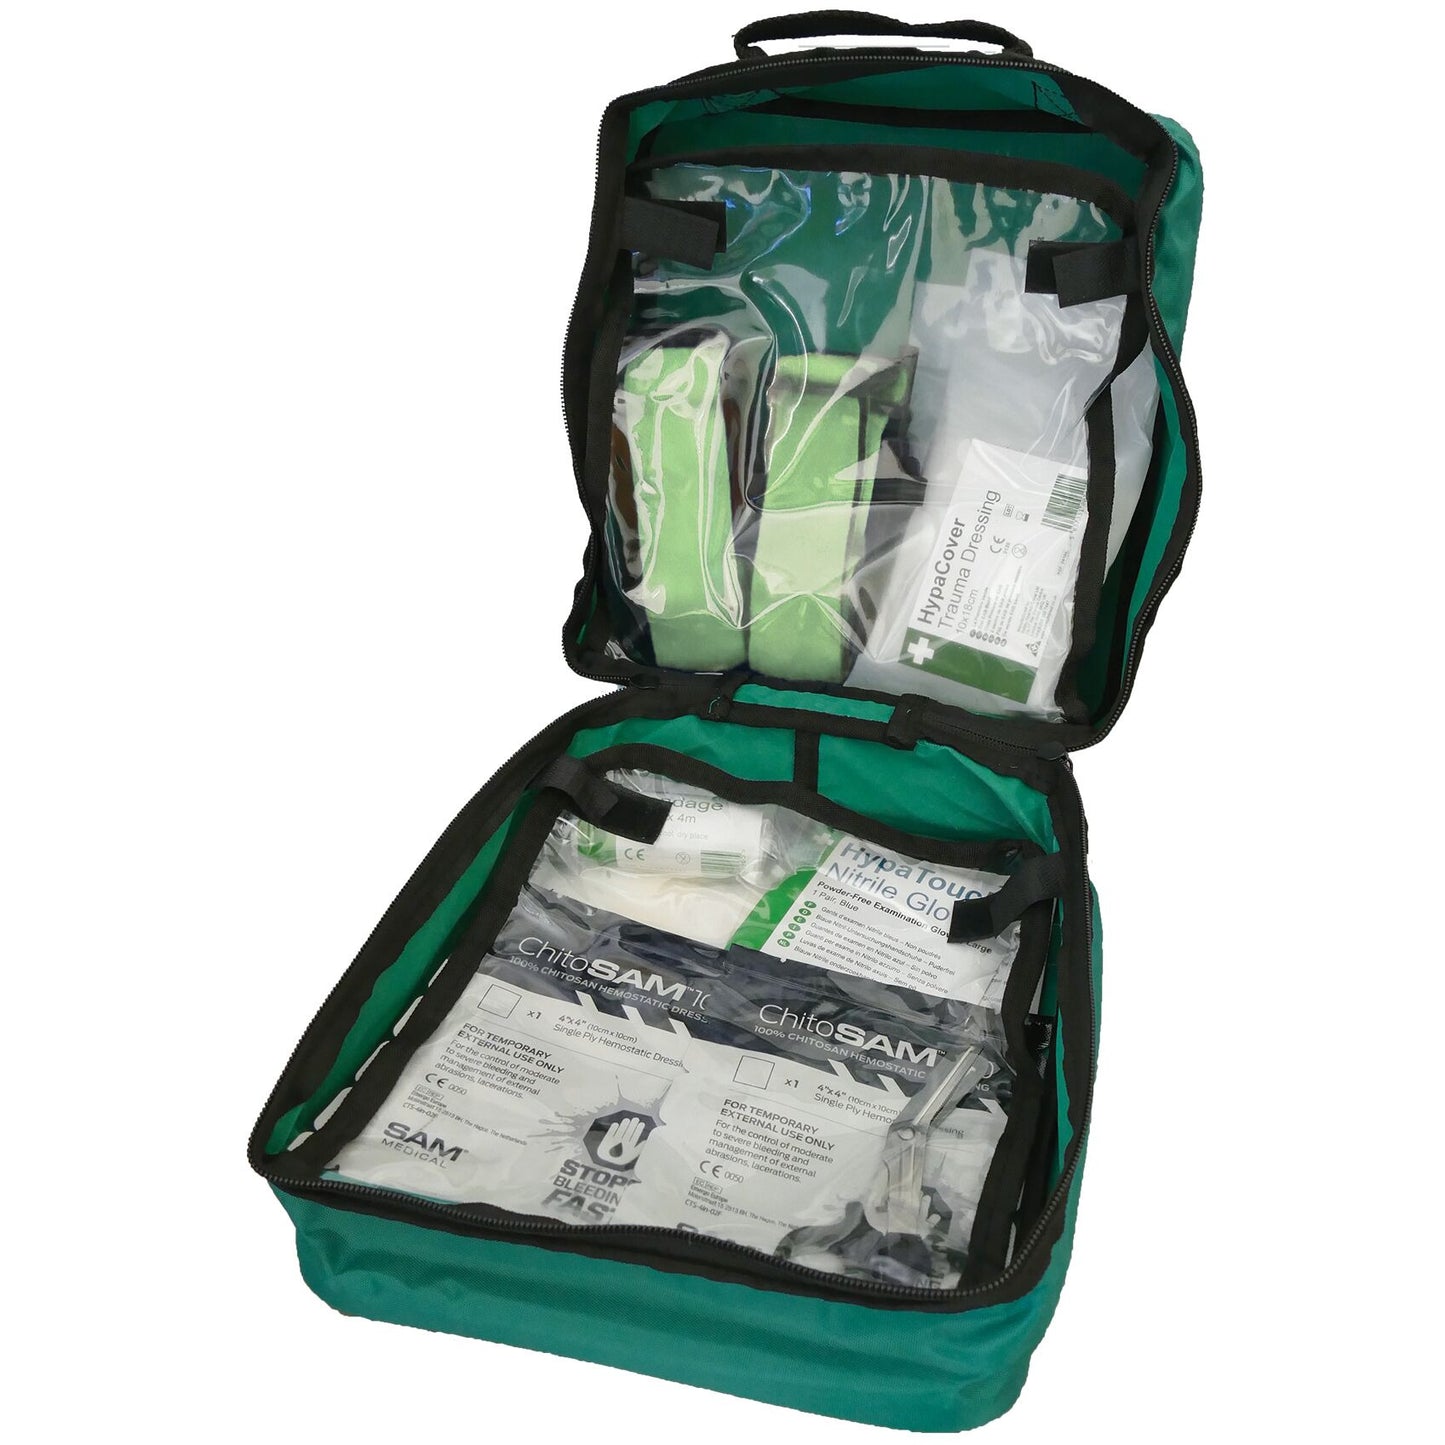 Catastrophic Bleed Kit, Standard in Grab Bag